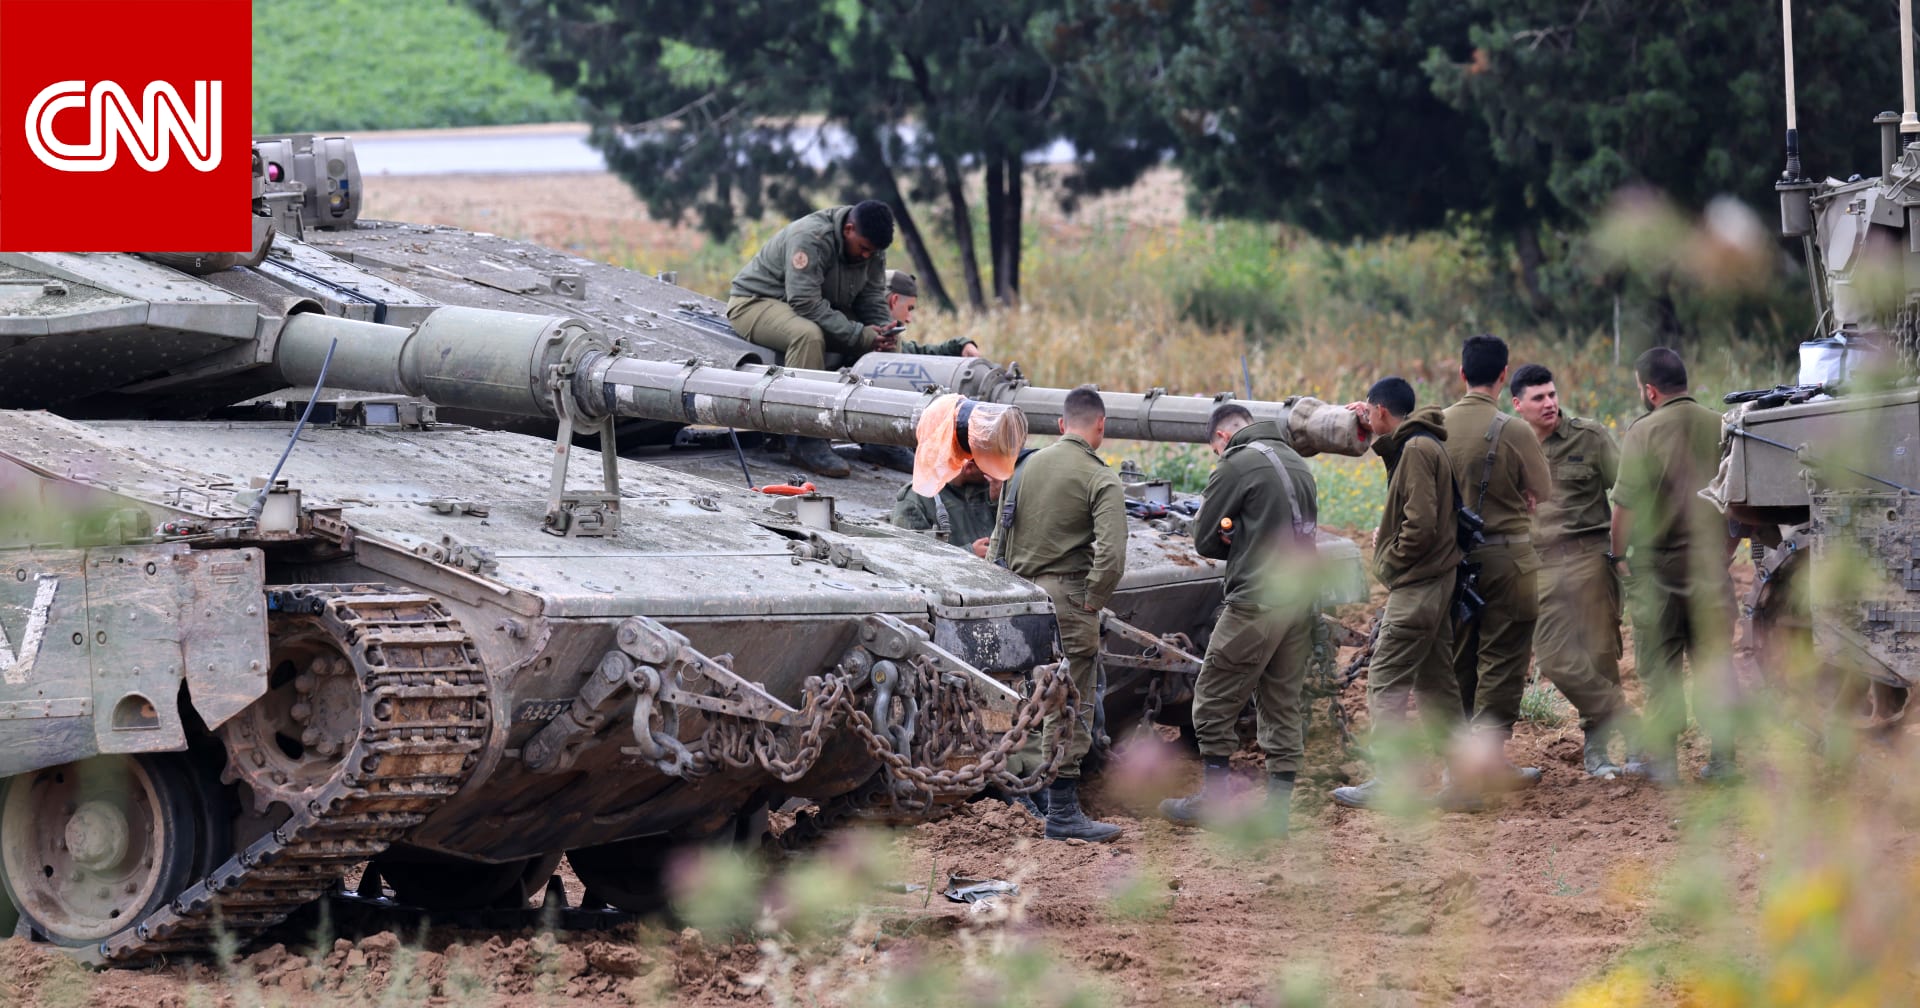 الجيش الإسرائيلي يستدعي نحو لواءين من الاحتياط للمشاركة في "الأنشطة العملياتية" بغزة